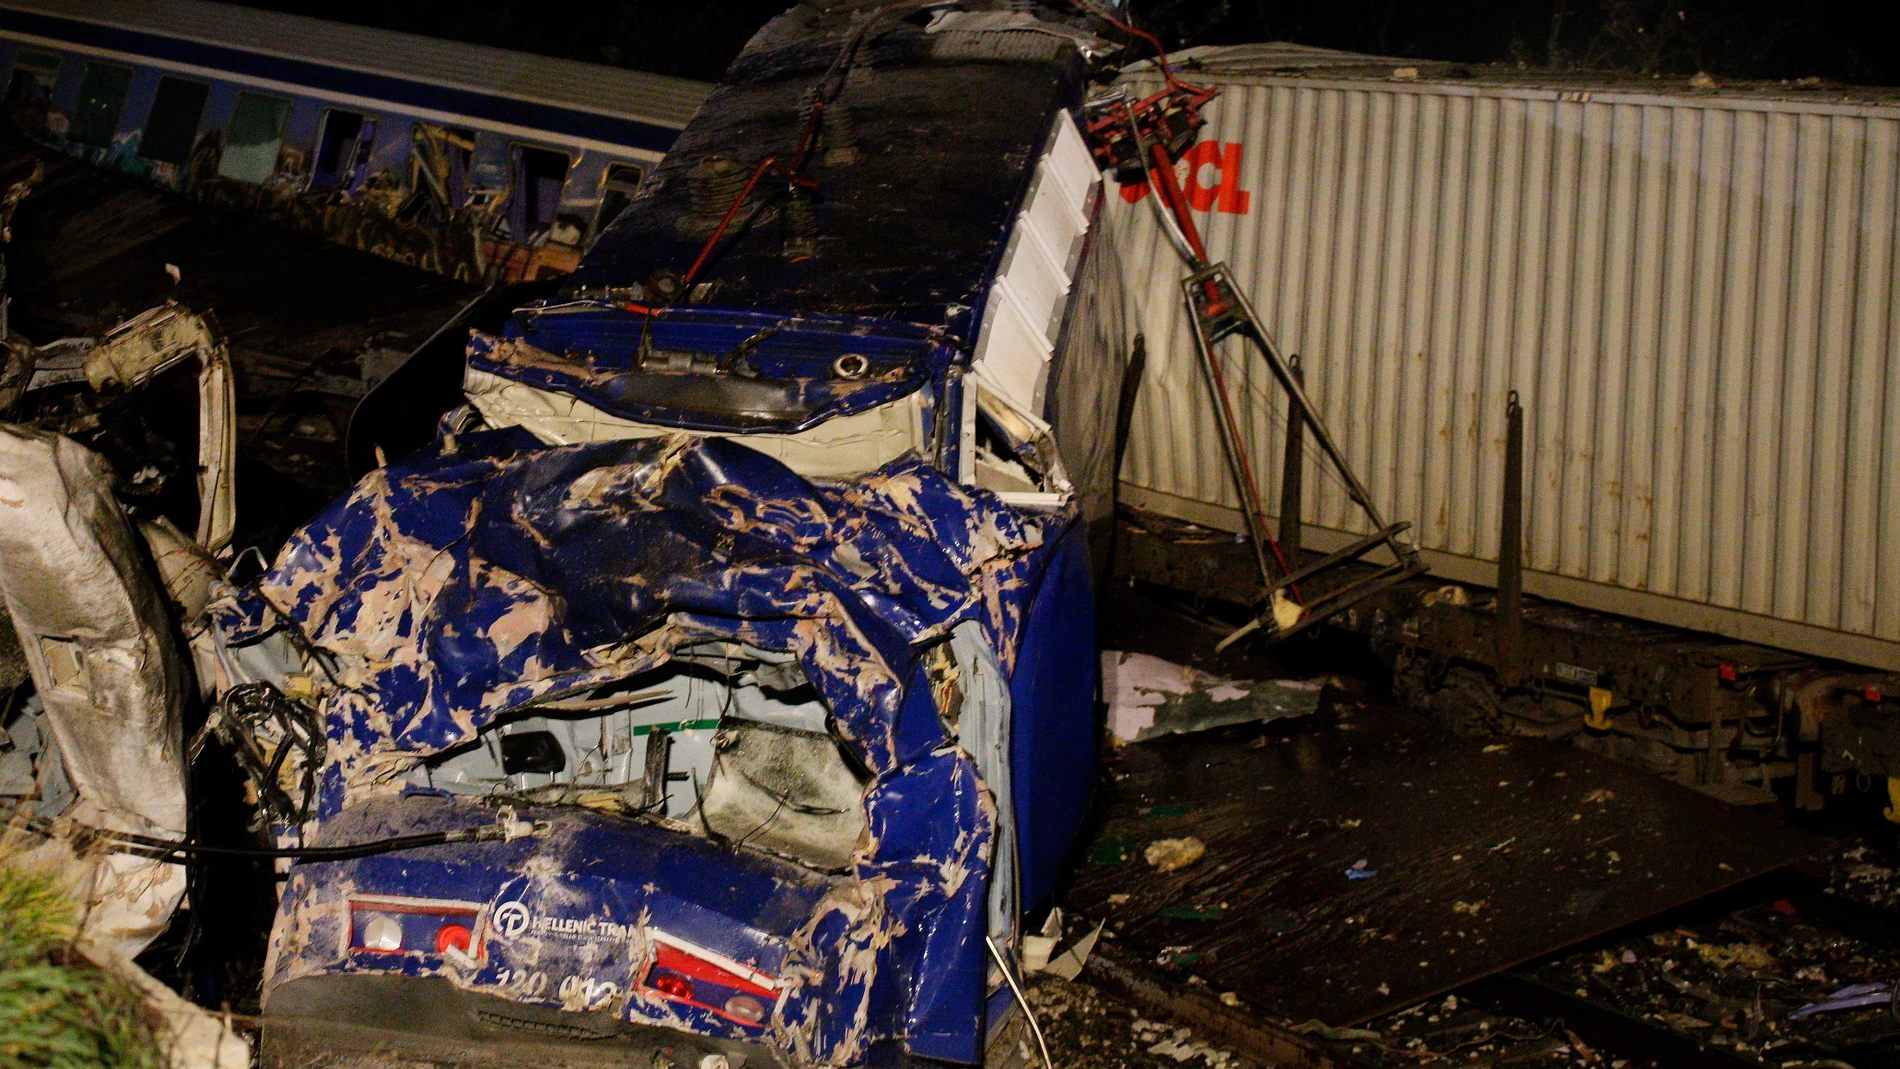  Vagón destruido en el accidente de tren en Grecia